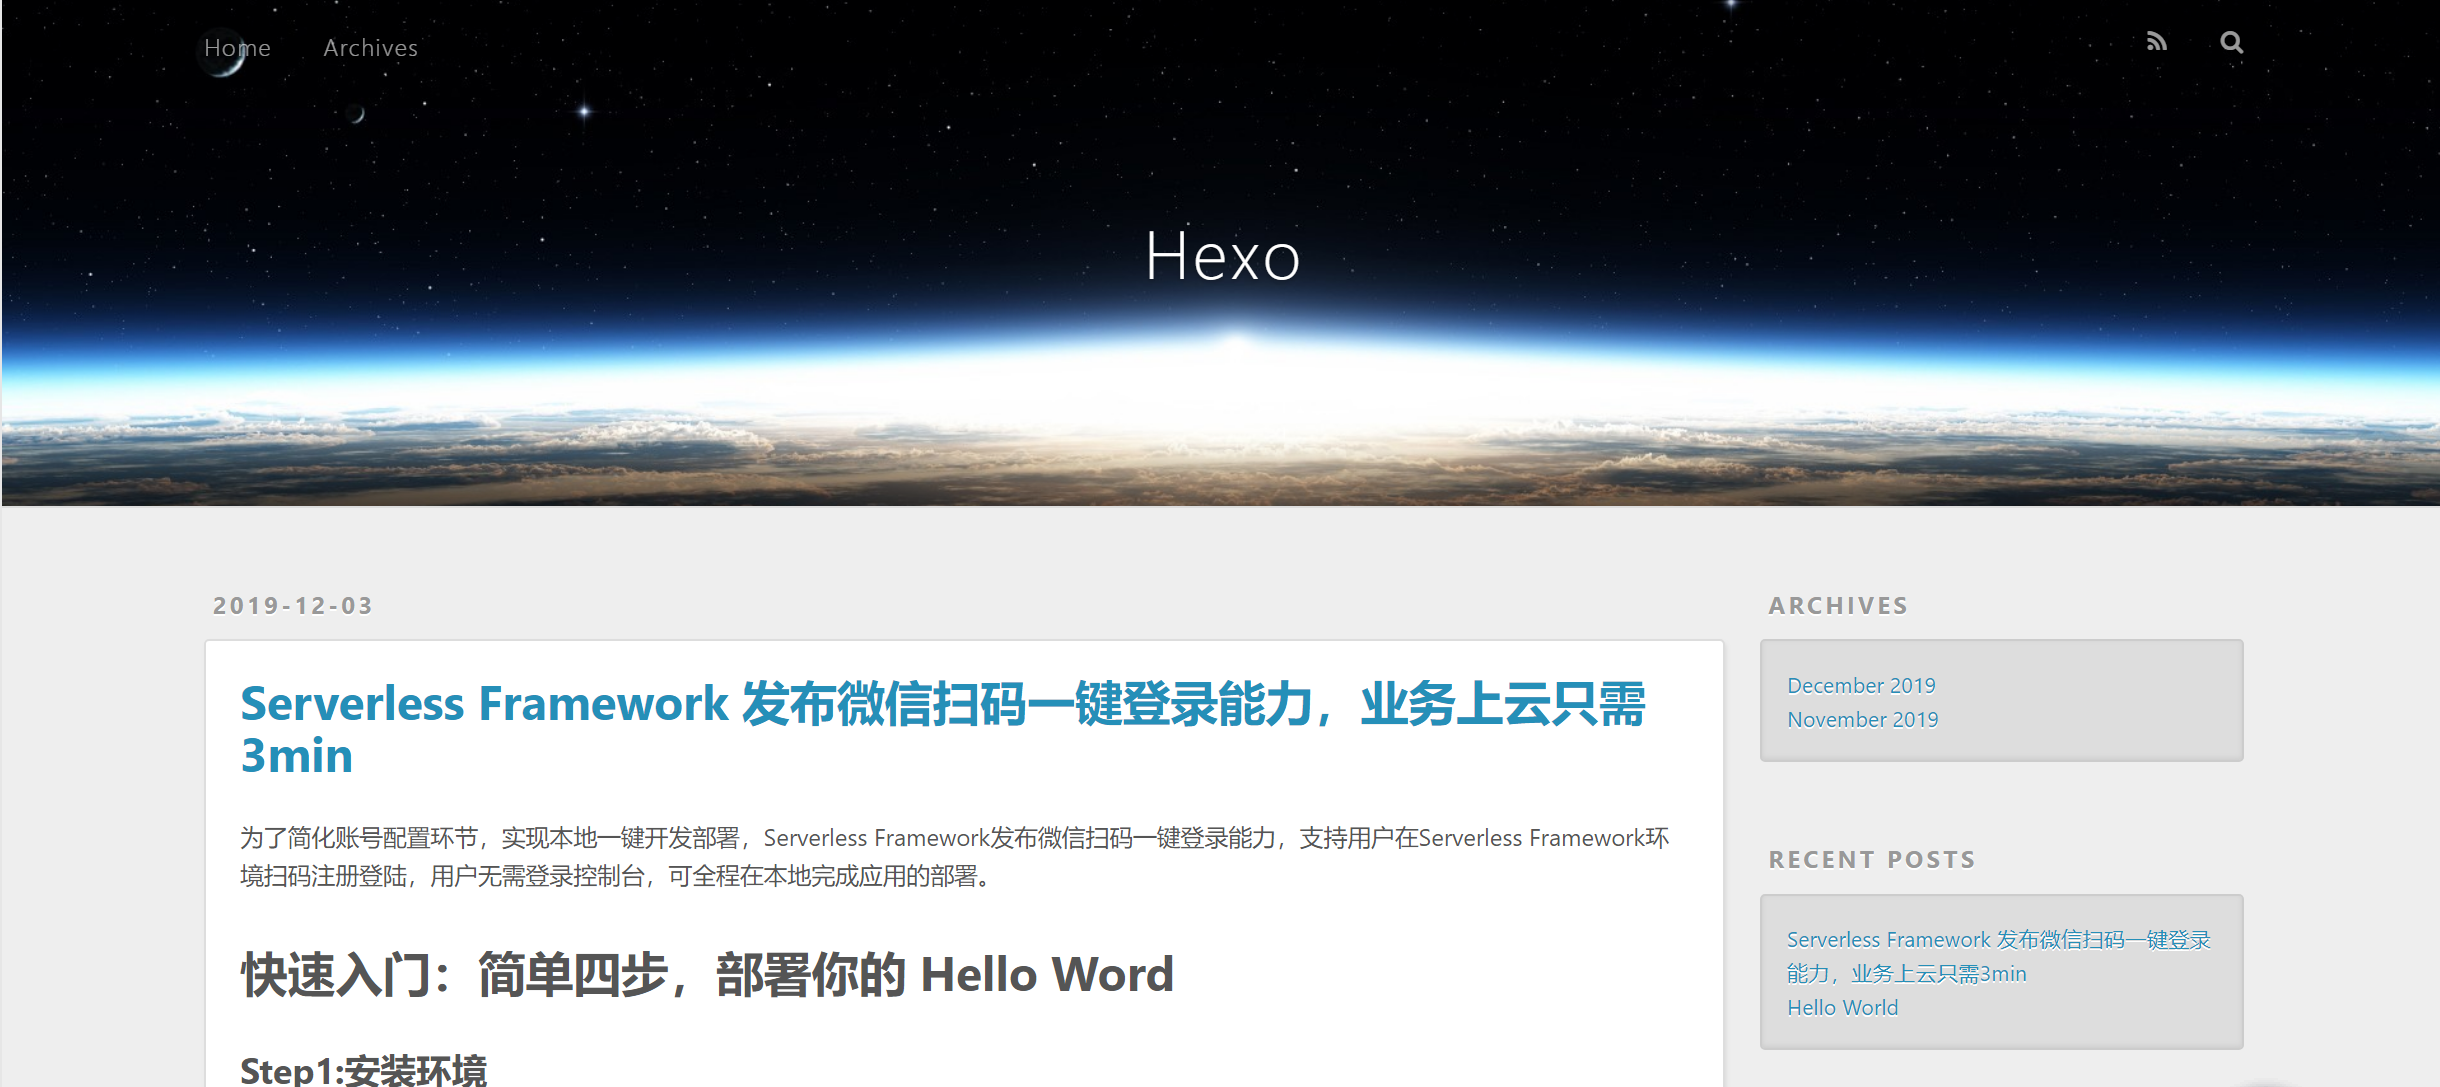 Hexo + Serverless Framework，简单三步搭建你的个人博客 